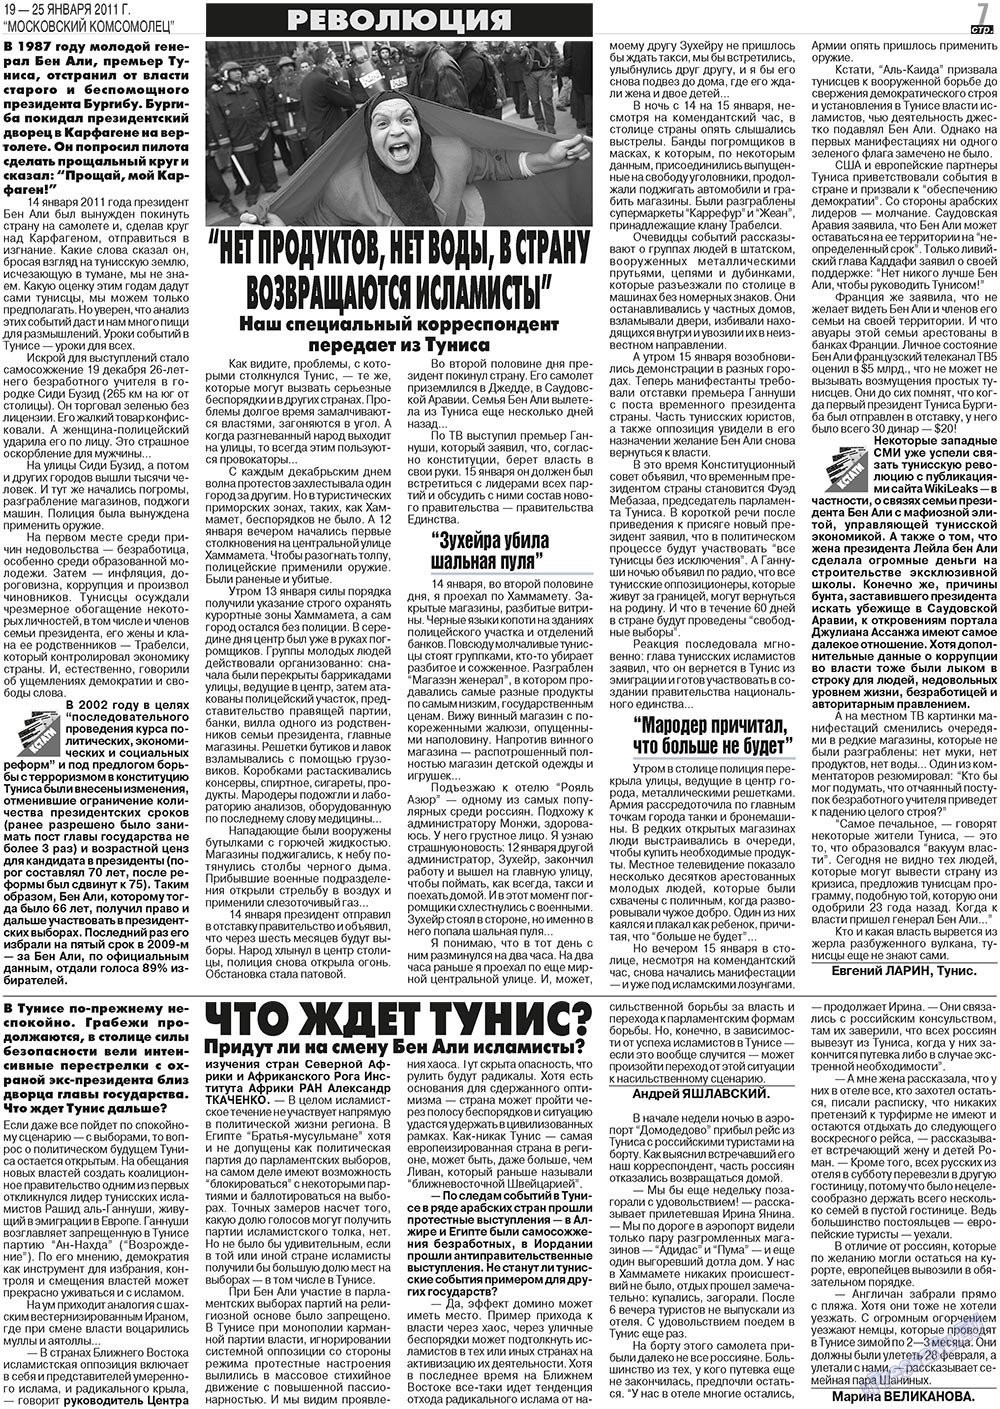 МК Испания, газета. 2011 №3 стр.7